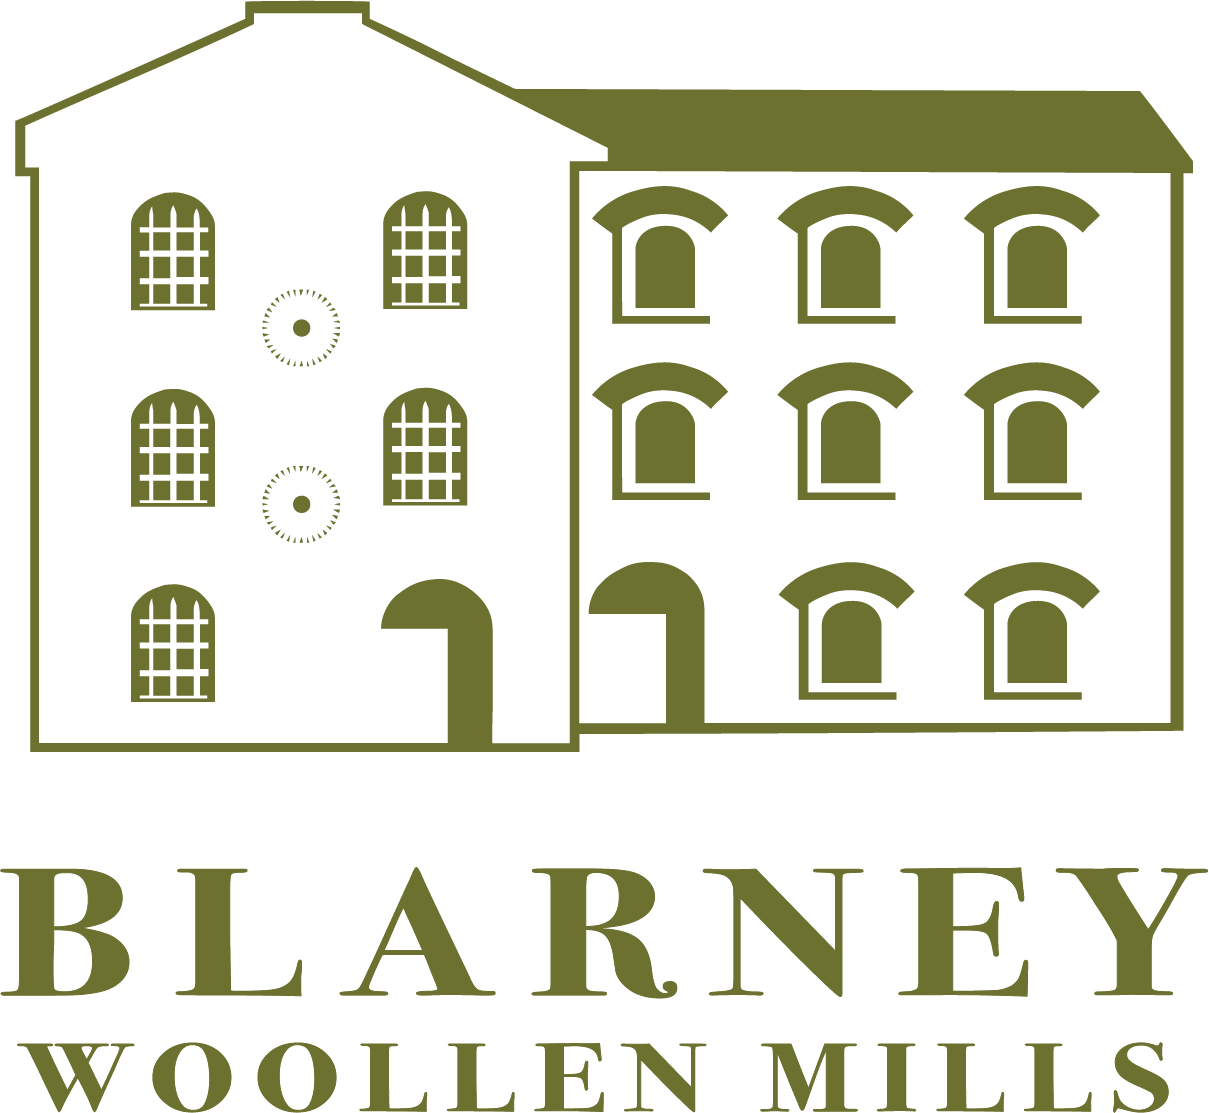 Blarney Woollen Mills